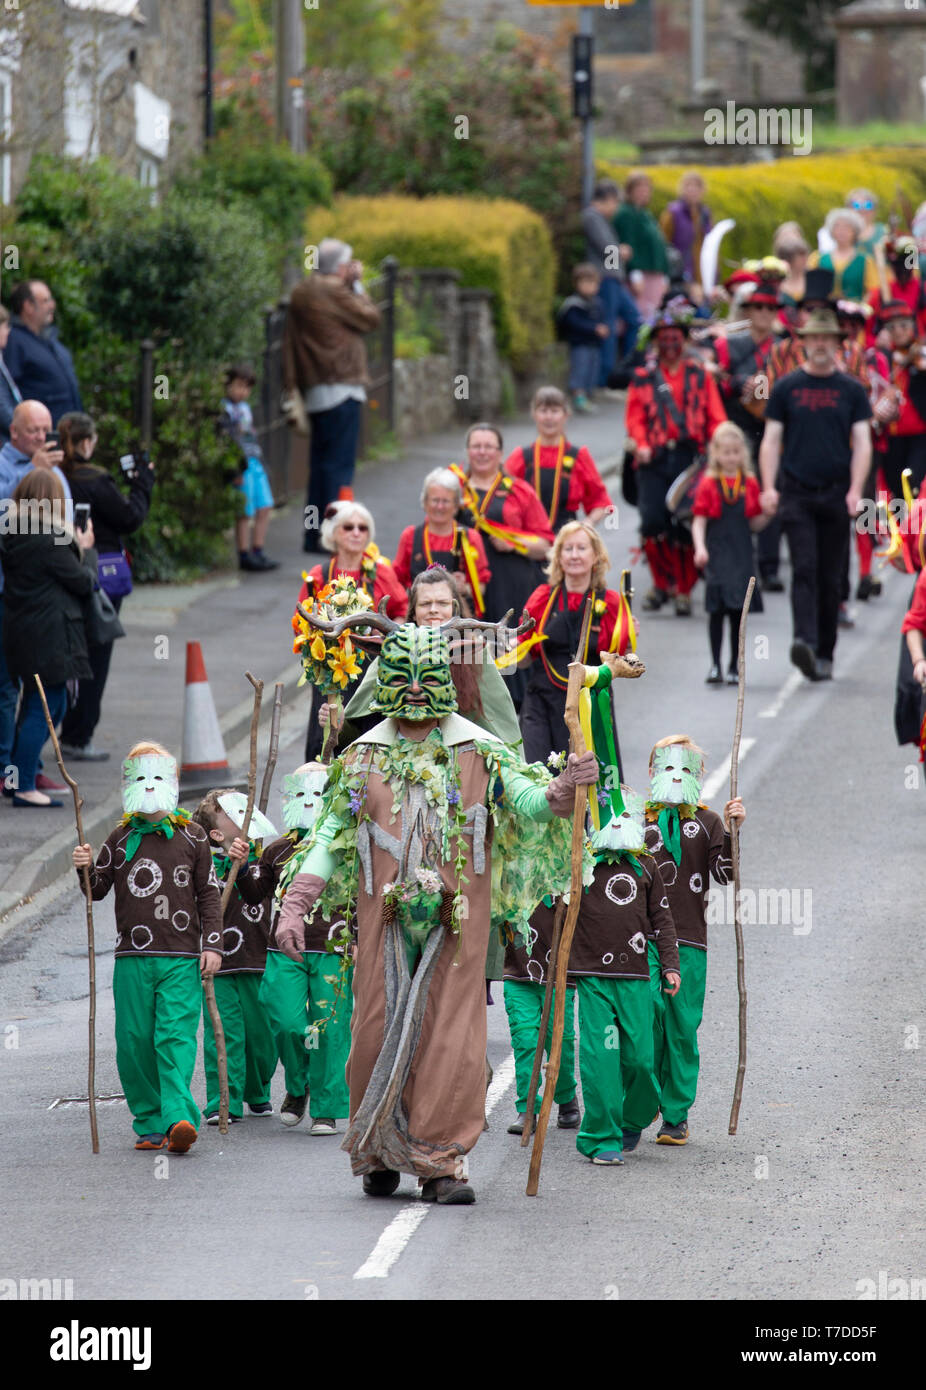 The Green Man Festival 2019, im Dorf Clun inn Shropshire England statt. Das Festival hat sich heidnische Ursprünge im Zusammenhang mit dem Wechsel der Jahreszeiten. Stockfoto